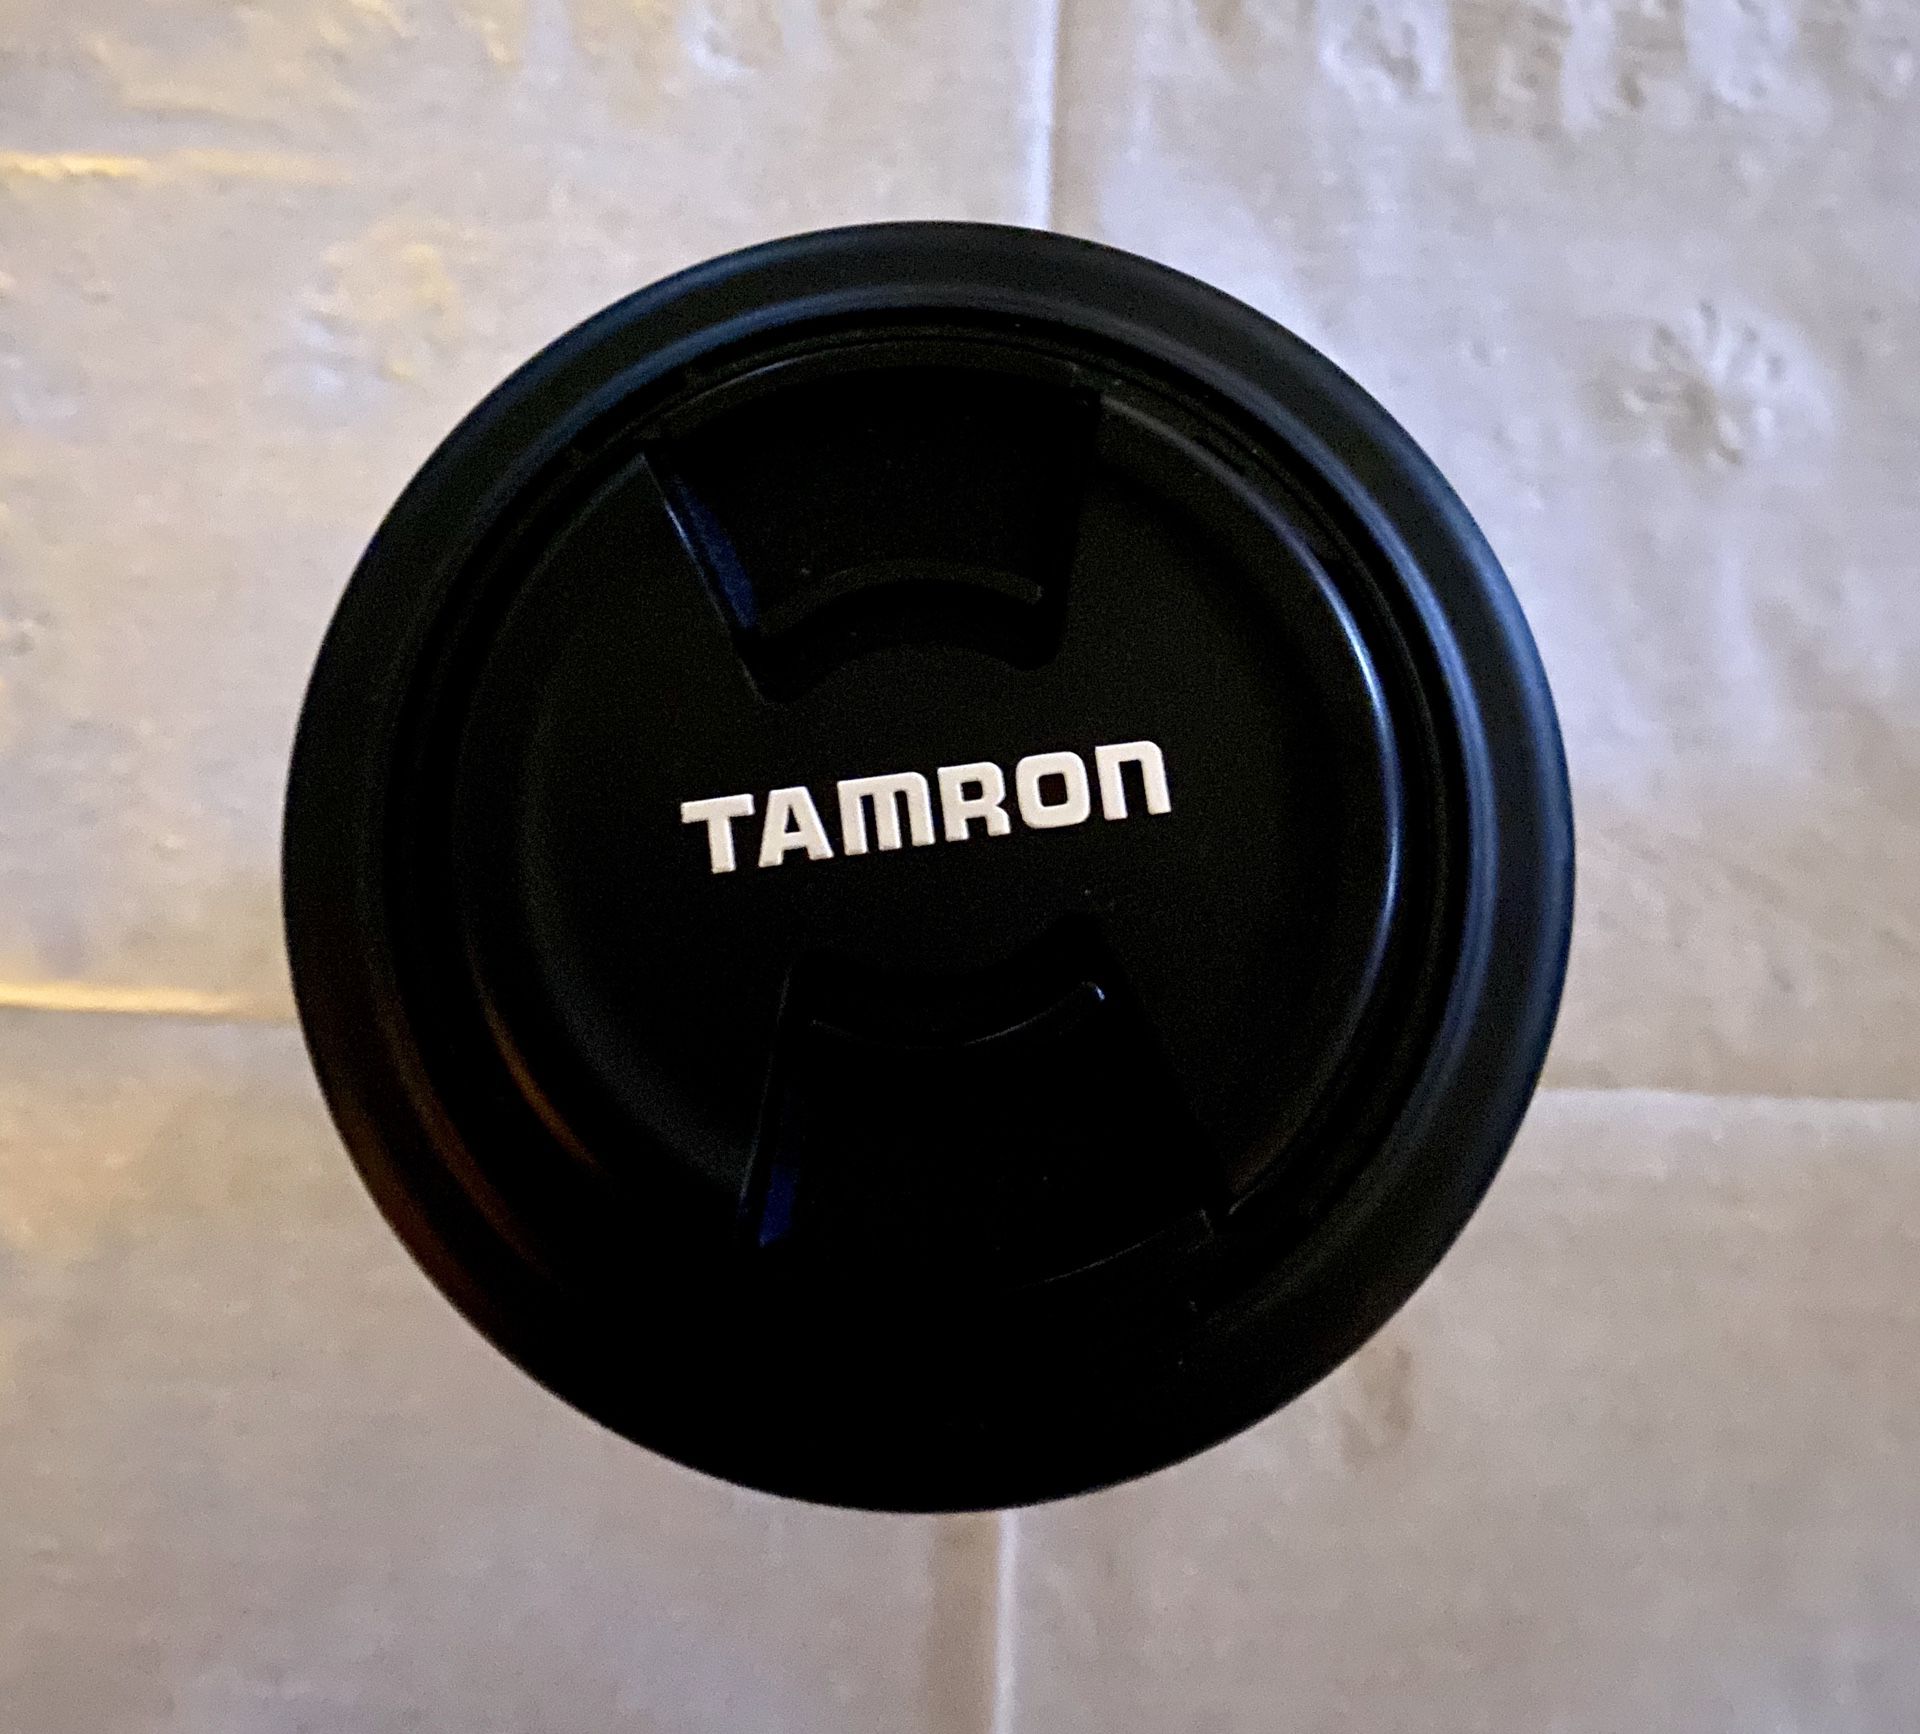 Tamron lens 28 - 80 mm lens for Sony DSLR cameras